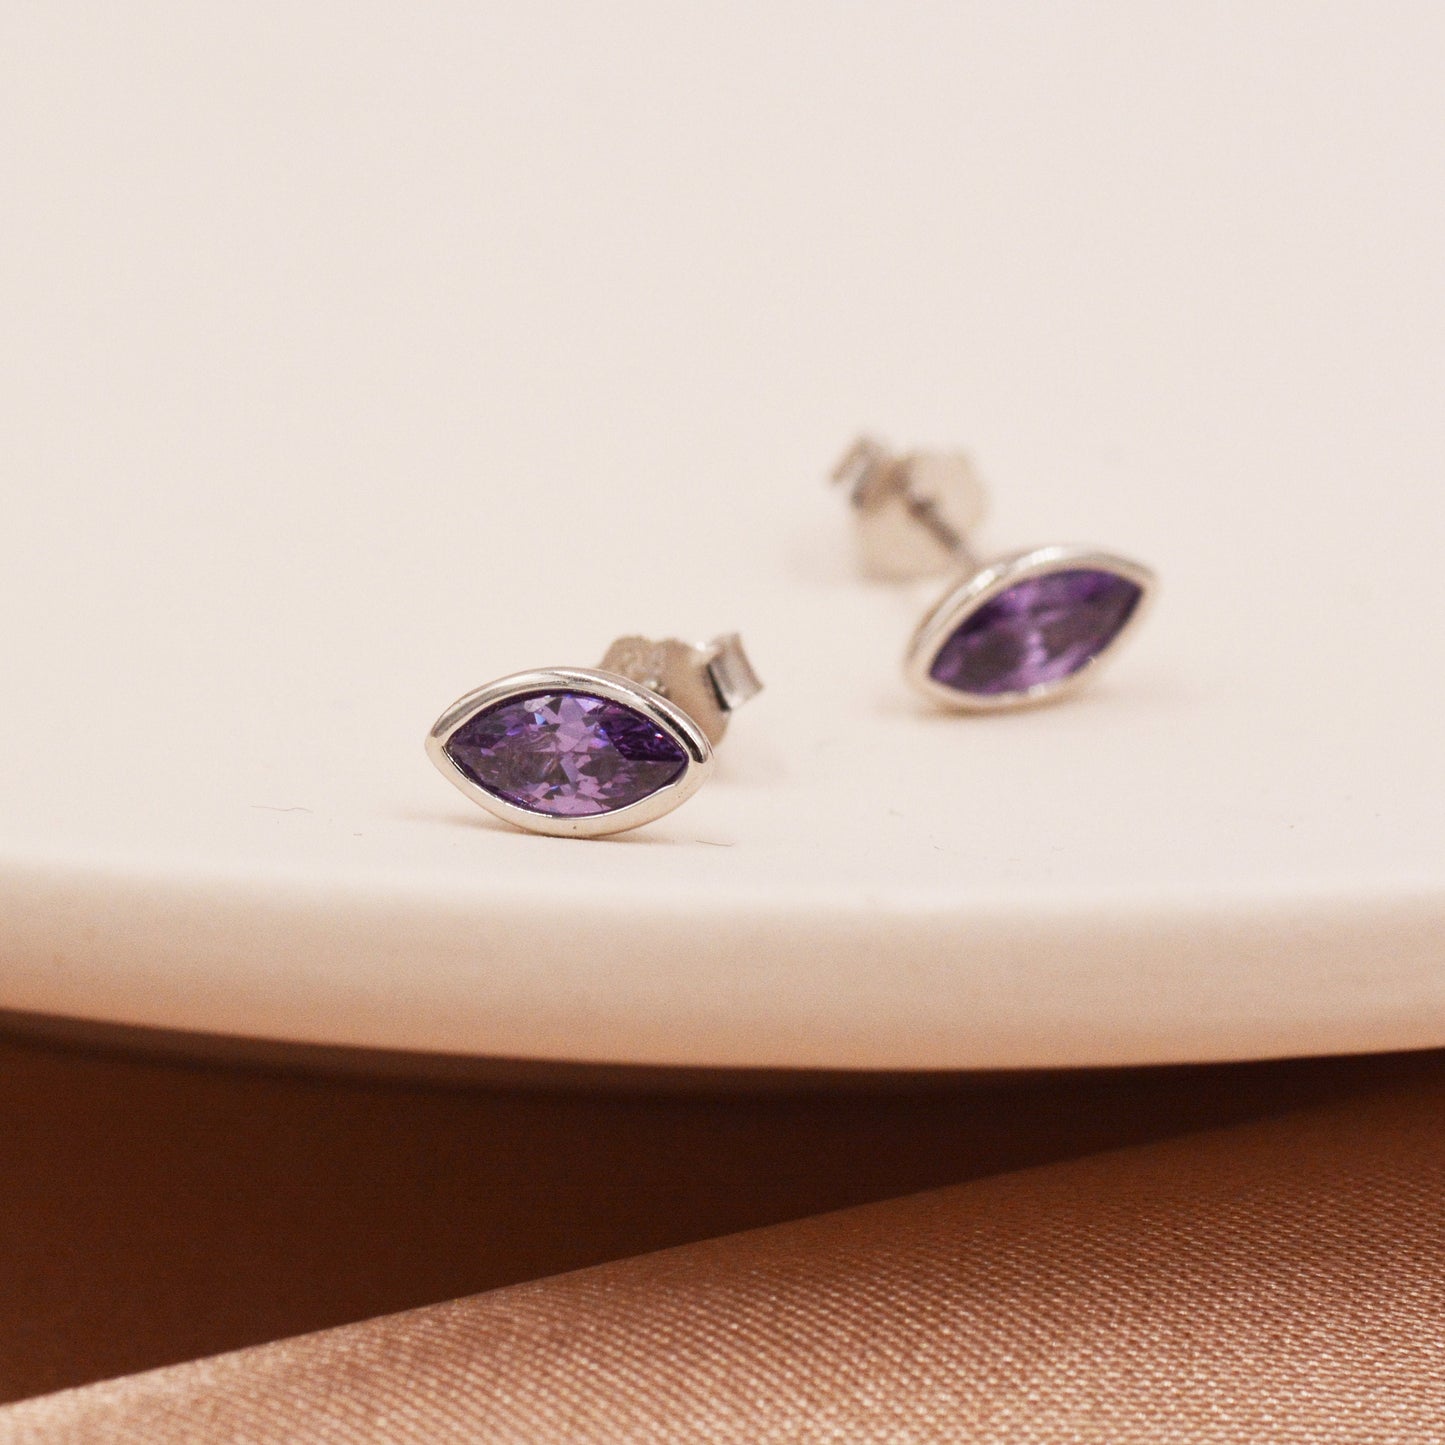 Amethyst Purple Crystal Marquise Stud Earrings in Sterling Silver with Lilac CZ -  Petite Stud Earrings or Threader Hoop